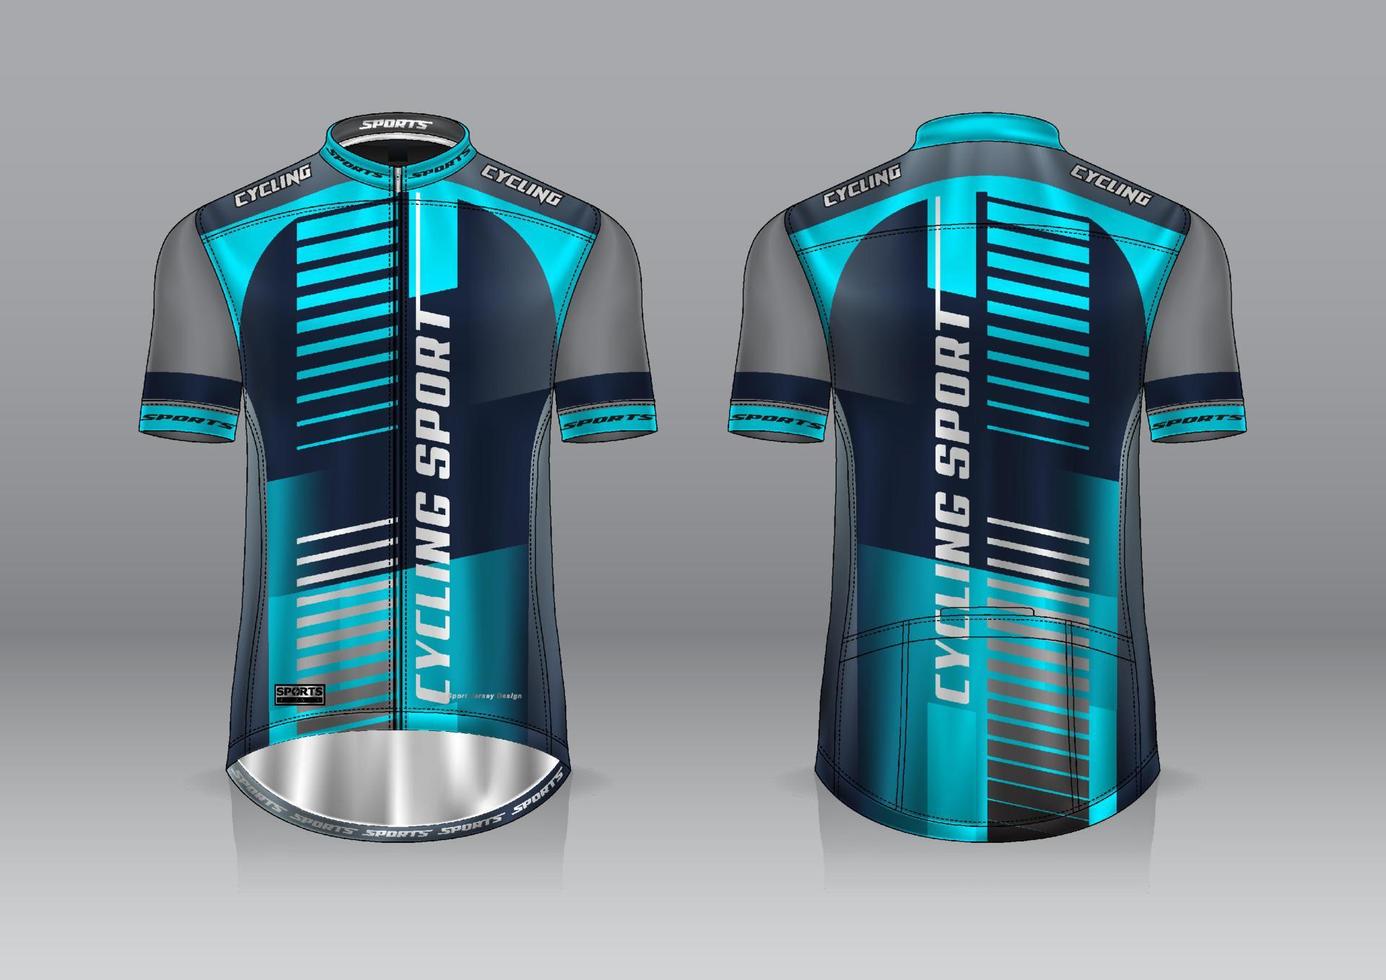 diseño de camiseta para ciclismo, vista frontal y posterior, y fácil de editar e imprimir en tela, ropa deportiva para equipos ciclistas vector